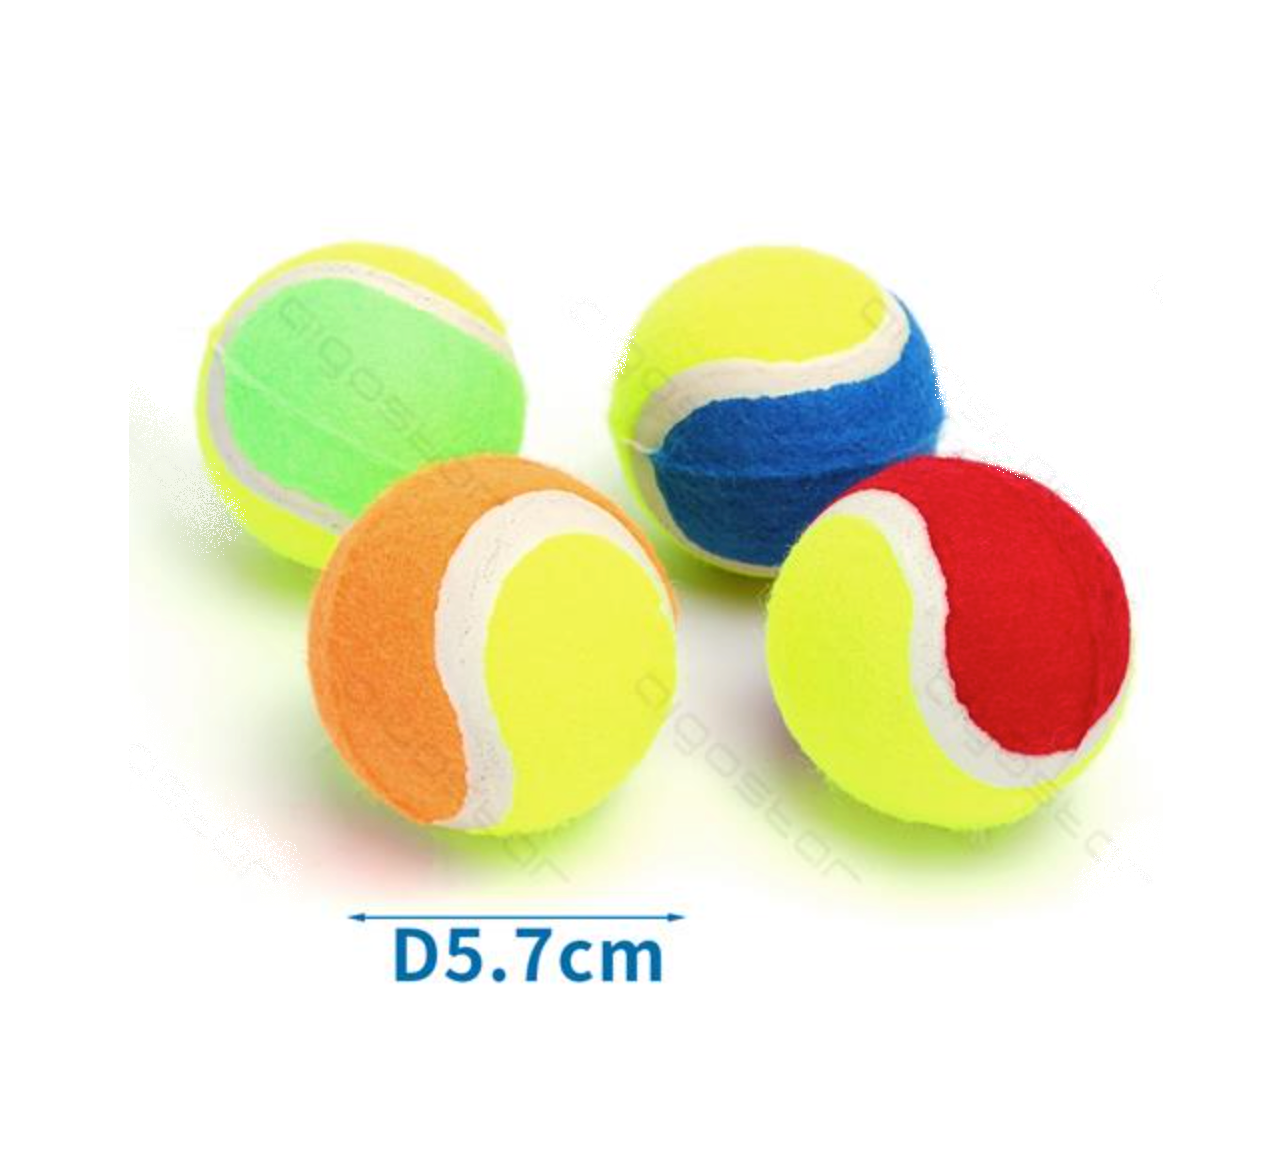 Ball tennis 5,7 cm